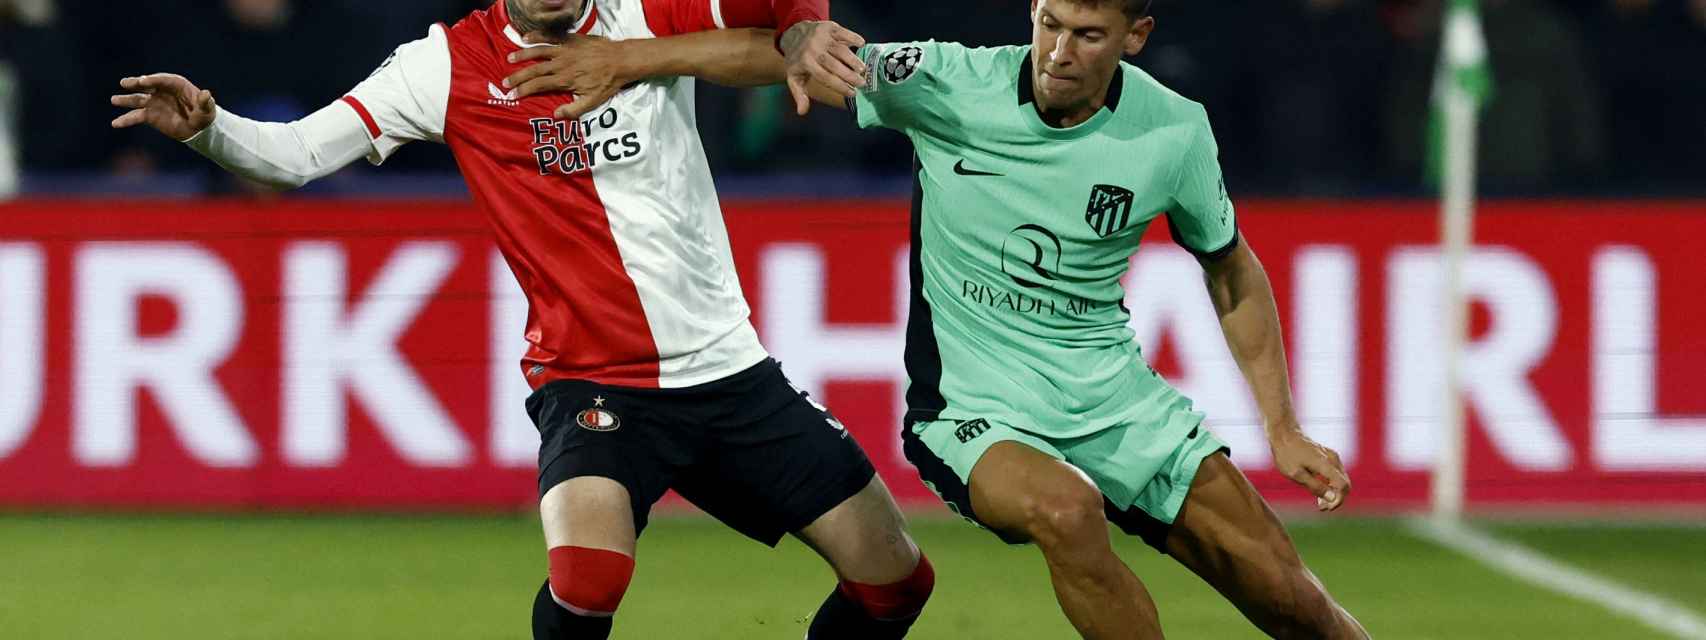 Atlético Madrid - Feyenoord, fútbol en directo: el conjunto rojiblanco se  lleva los tres puntos liderado por un gran Morata